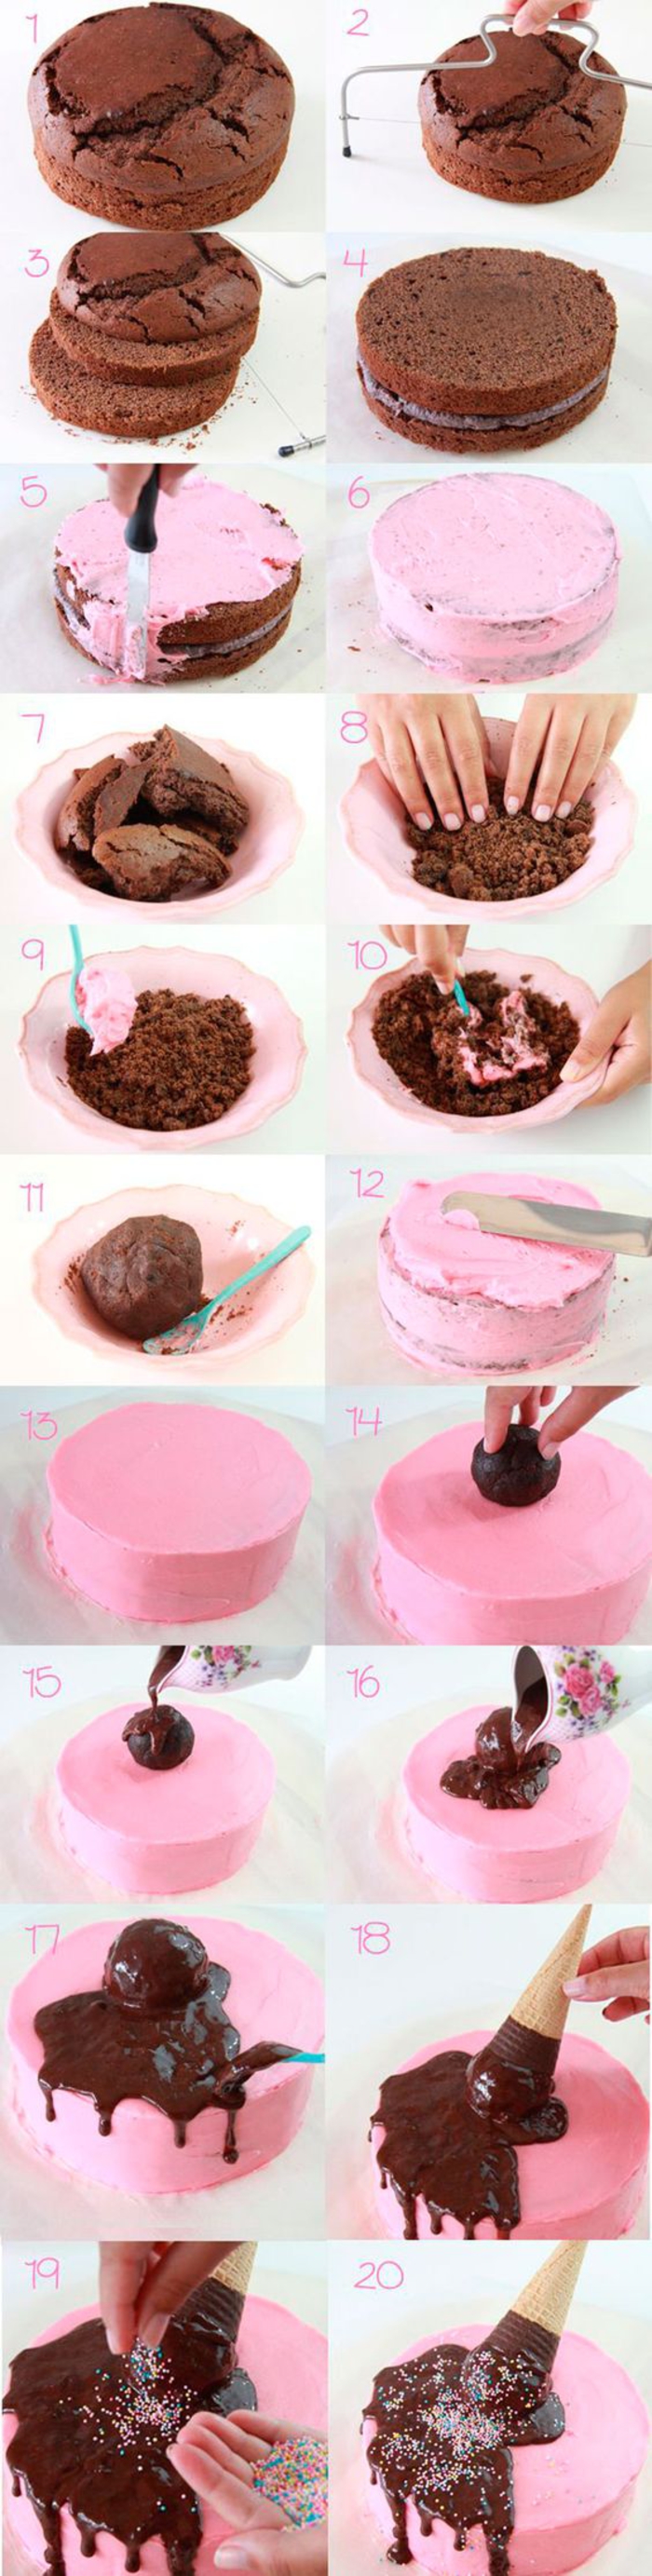 un tuto facile pour réaliser un gâteau dégoulinant décoré de cornet de glace, idée pour une décoration anniversaire originale